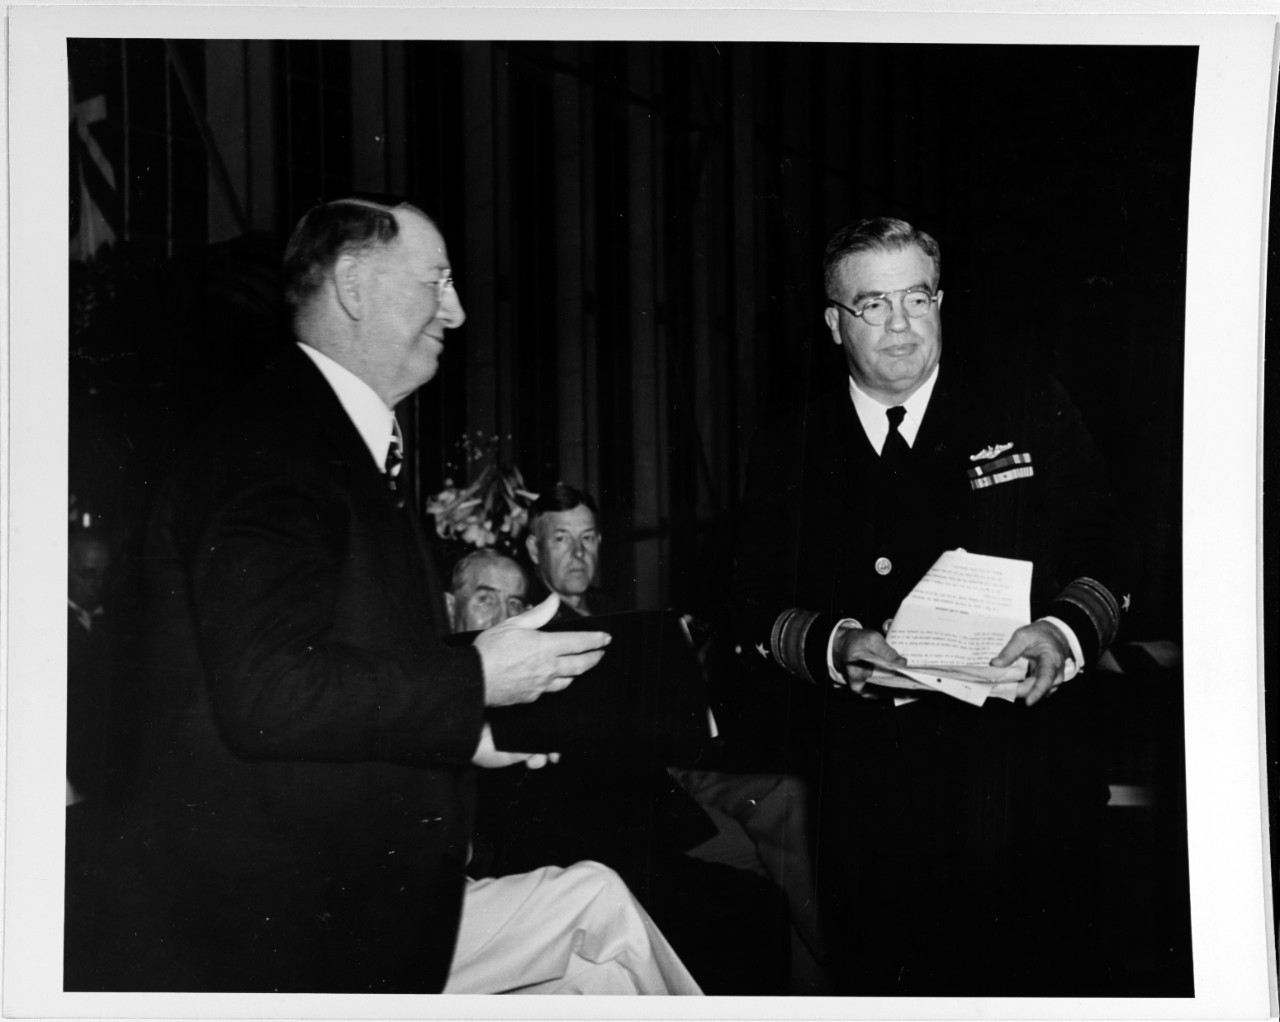 Frank Knox, Secretary of the Navy